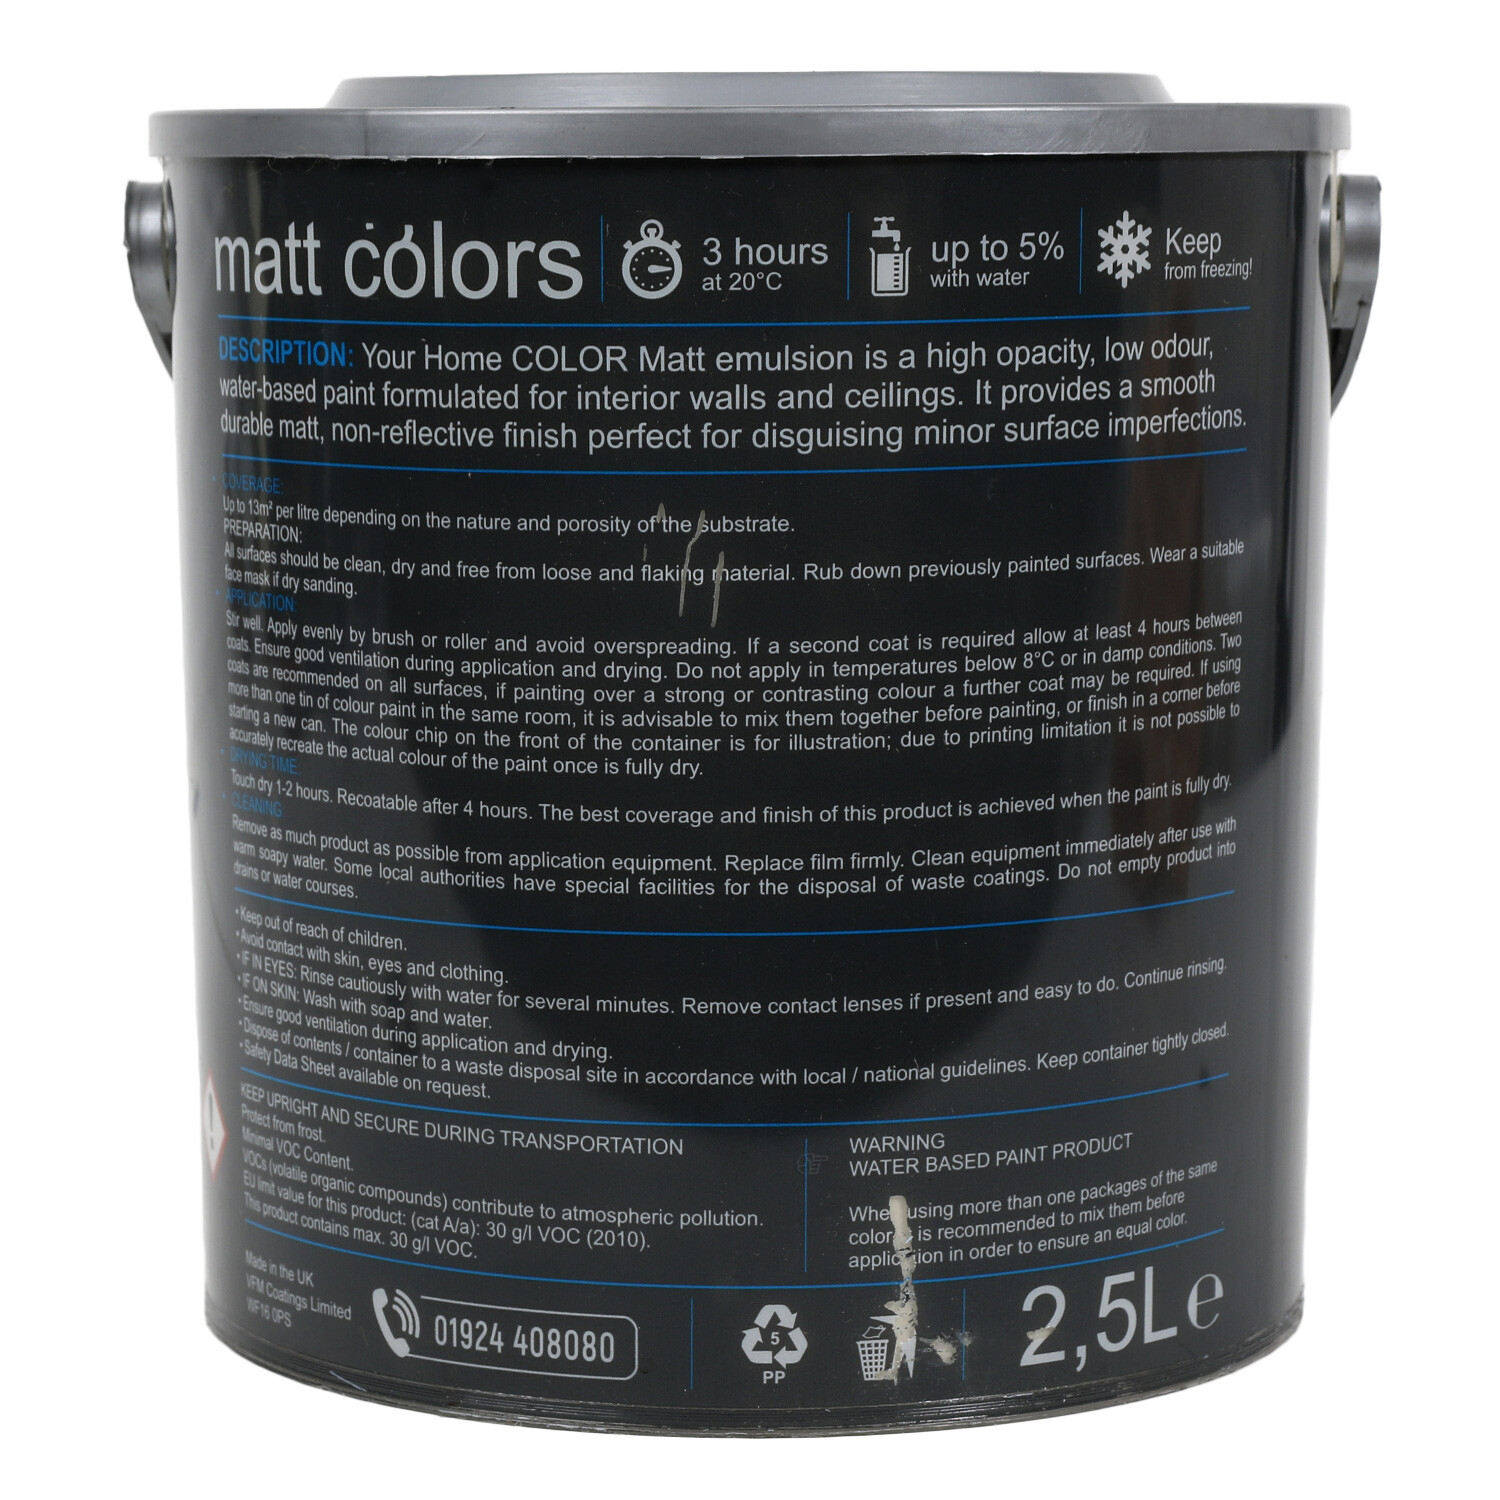 Your Home Walls & Ceilings Cotton Bud Matt Emulsion Paint 2.5L Image 2